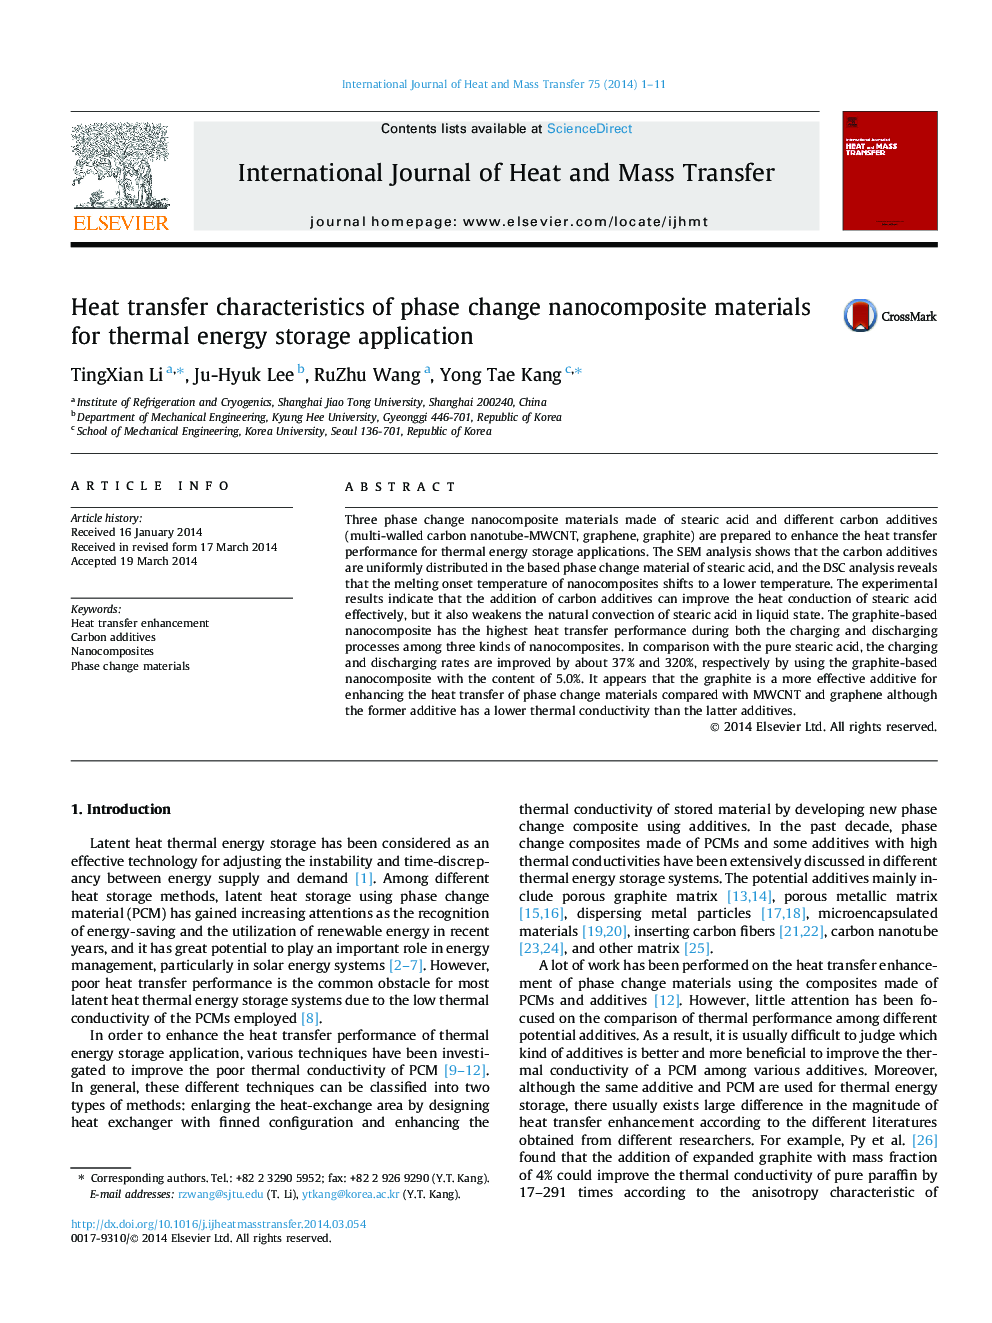 ویژگی های انتقال حرارت مواد نانوکامپوزیتی تغییر فاز برای برنامه ذخیره سازی انرژی حرارتی 